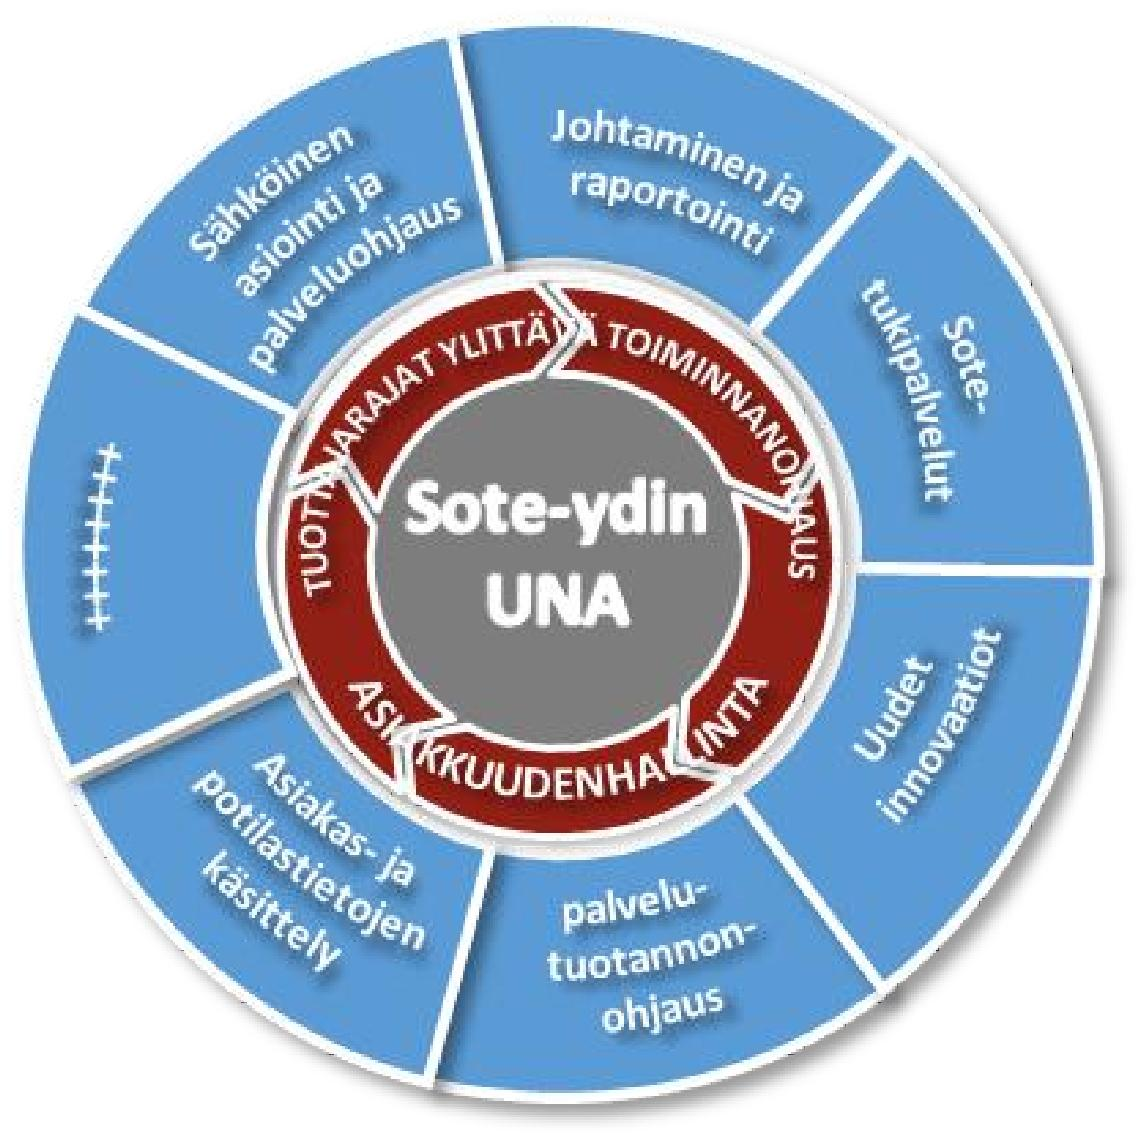 Uusi modulaarinen tietojärjestelmäarkkitehtuuri Toteutetaan kansallisessa UNA-yhteistyössä Toteutetaan osittain kansallisessa UNA-yhteistyössä Toteutetaan kansallisessa yhteistyössä